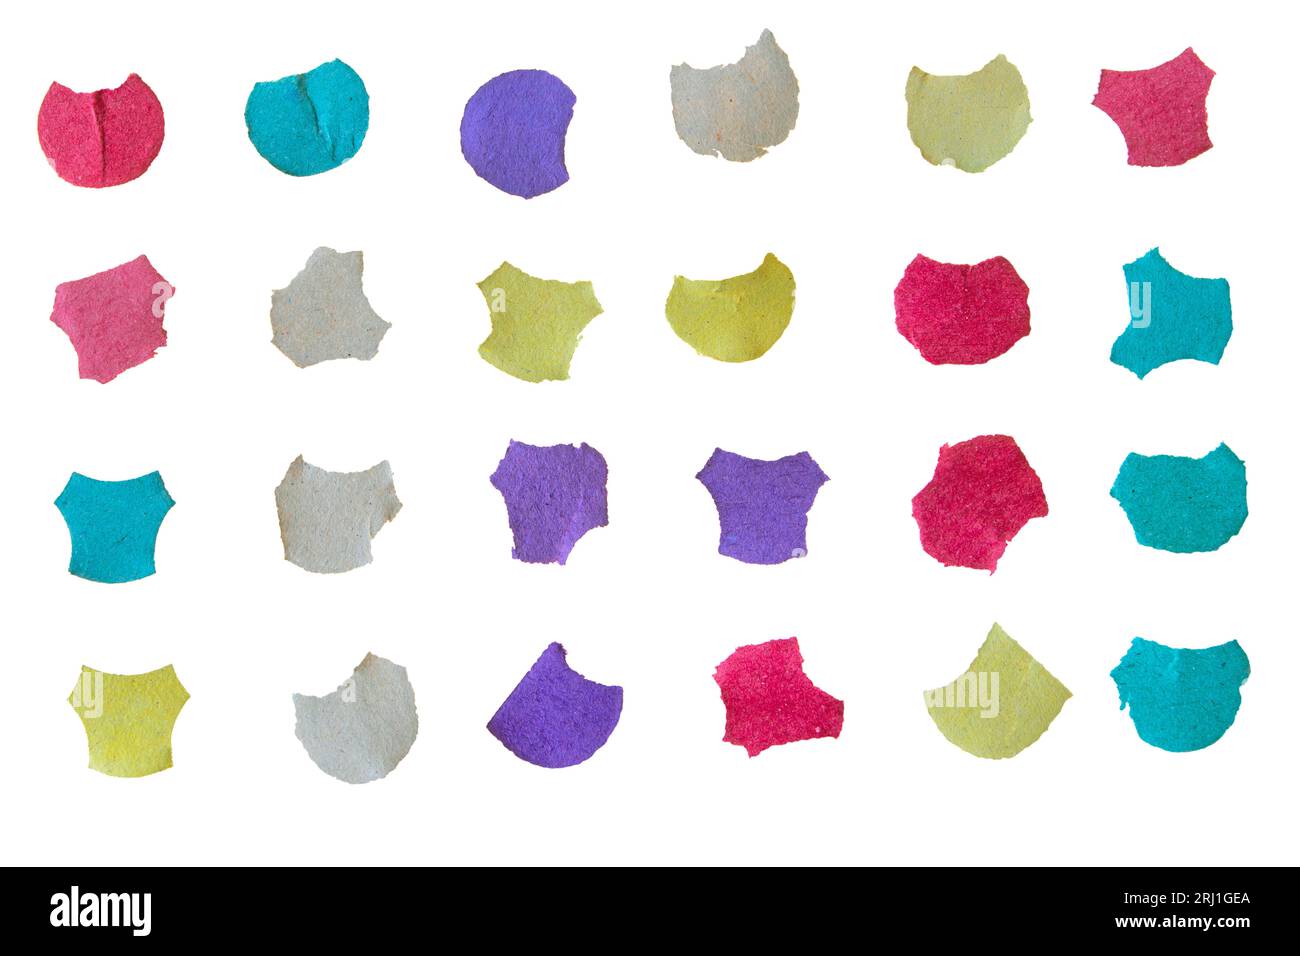 Konfetti mehrfarbig isoliert auf weiß. Kleine Stücke gefärbtes Recyclingpapier. Karneval-, Geburtstags- oder Hochzeitsdekoration. Stockfoto